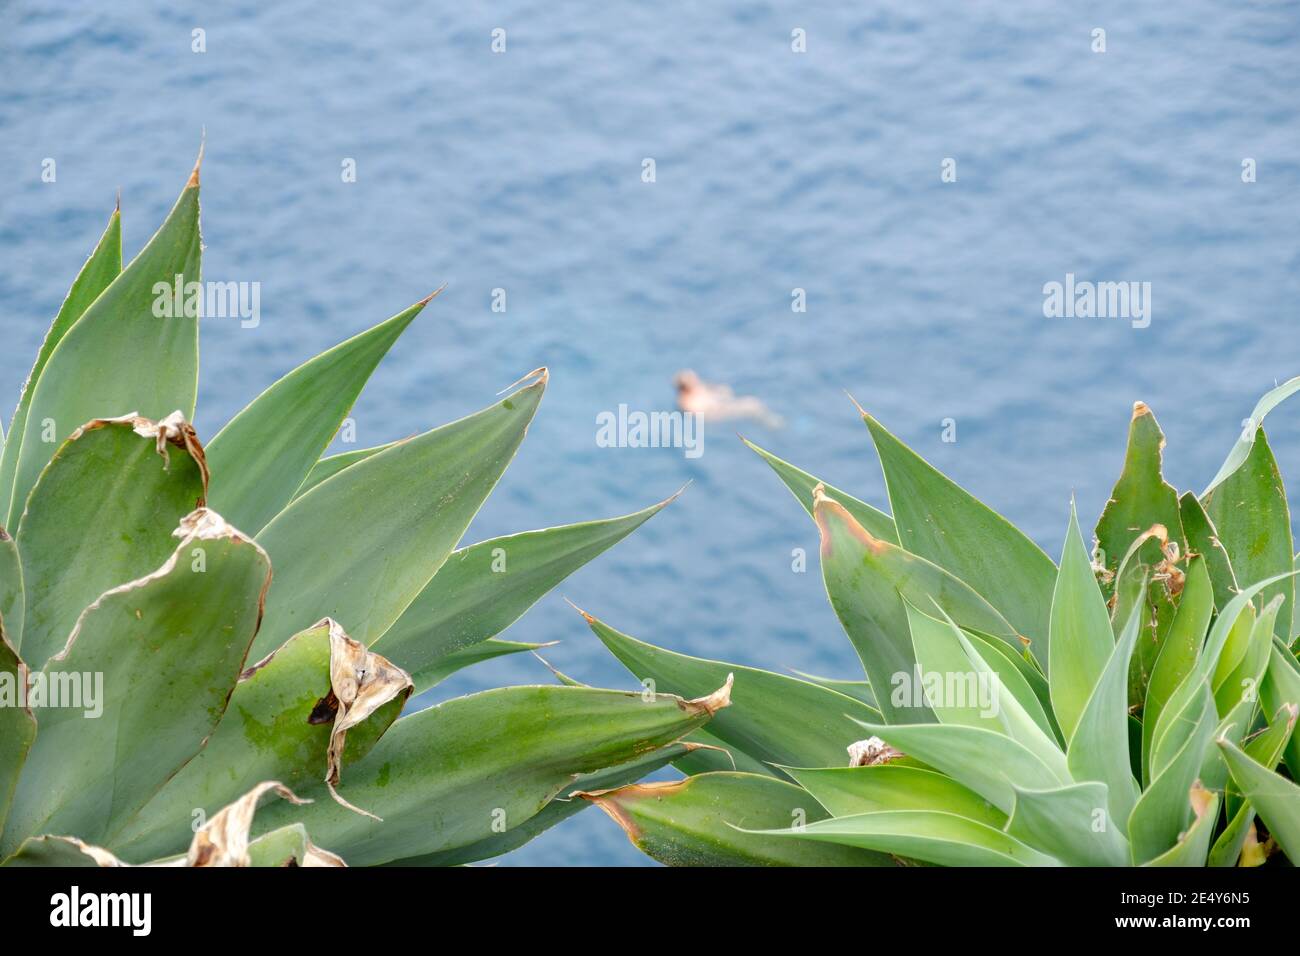 Eine üppige Sukkulente, die den Ozean in einem hohen zeigt Blick mit einem Mann im Hintergrund im Wasser Stockfoto